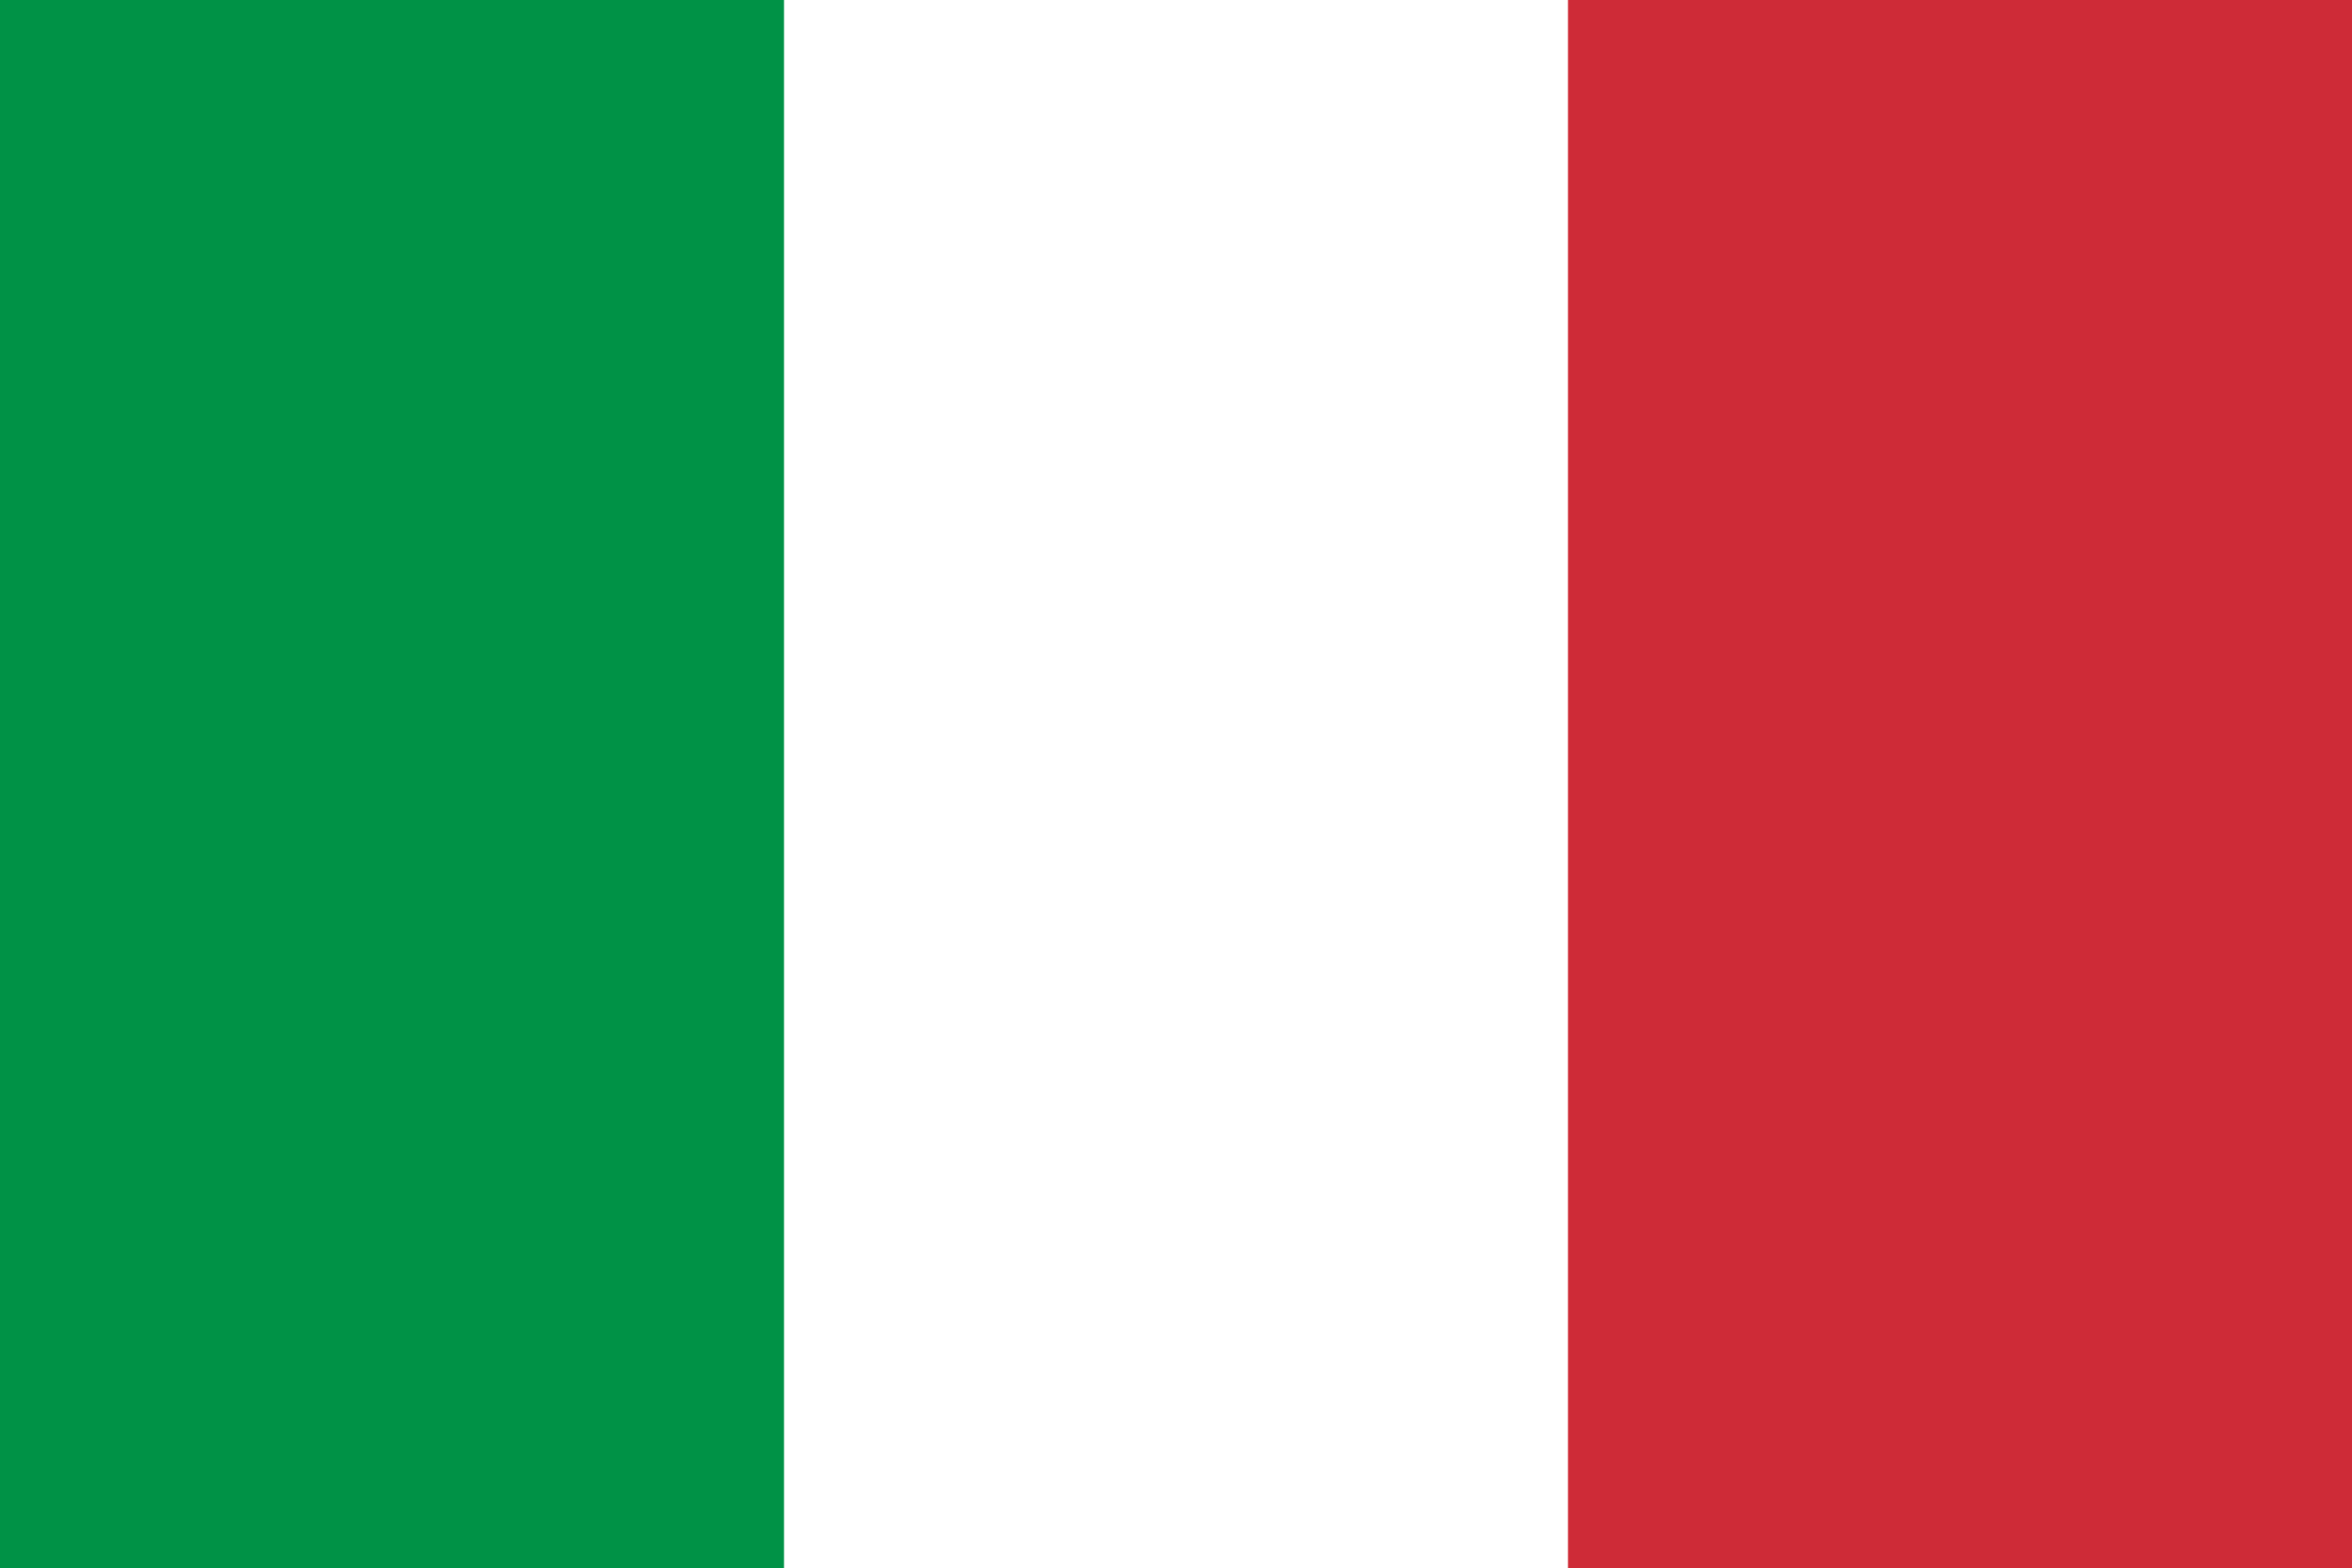 Bendera Itali